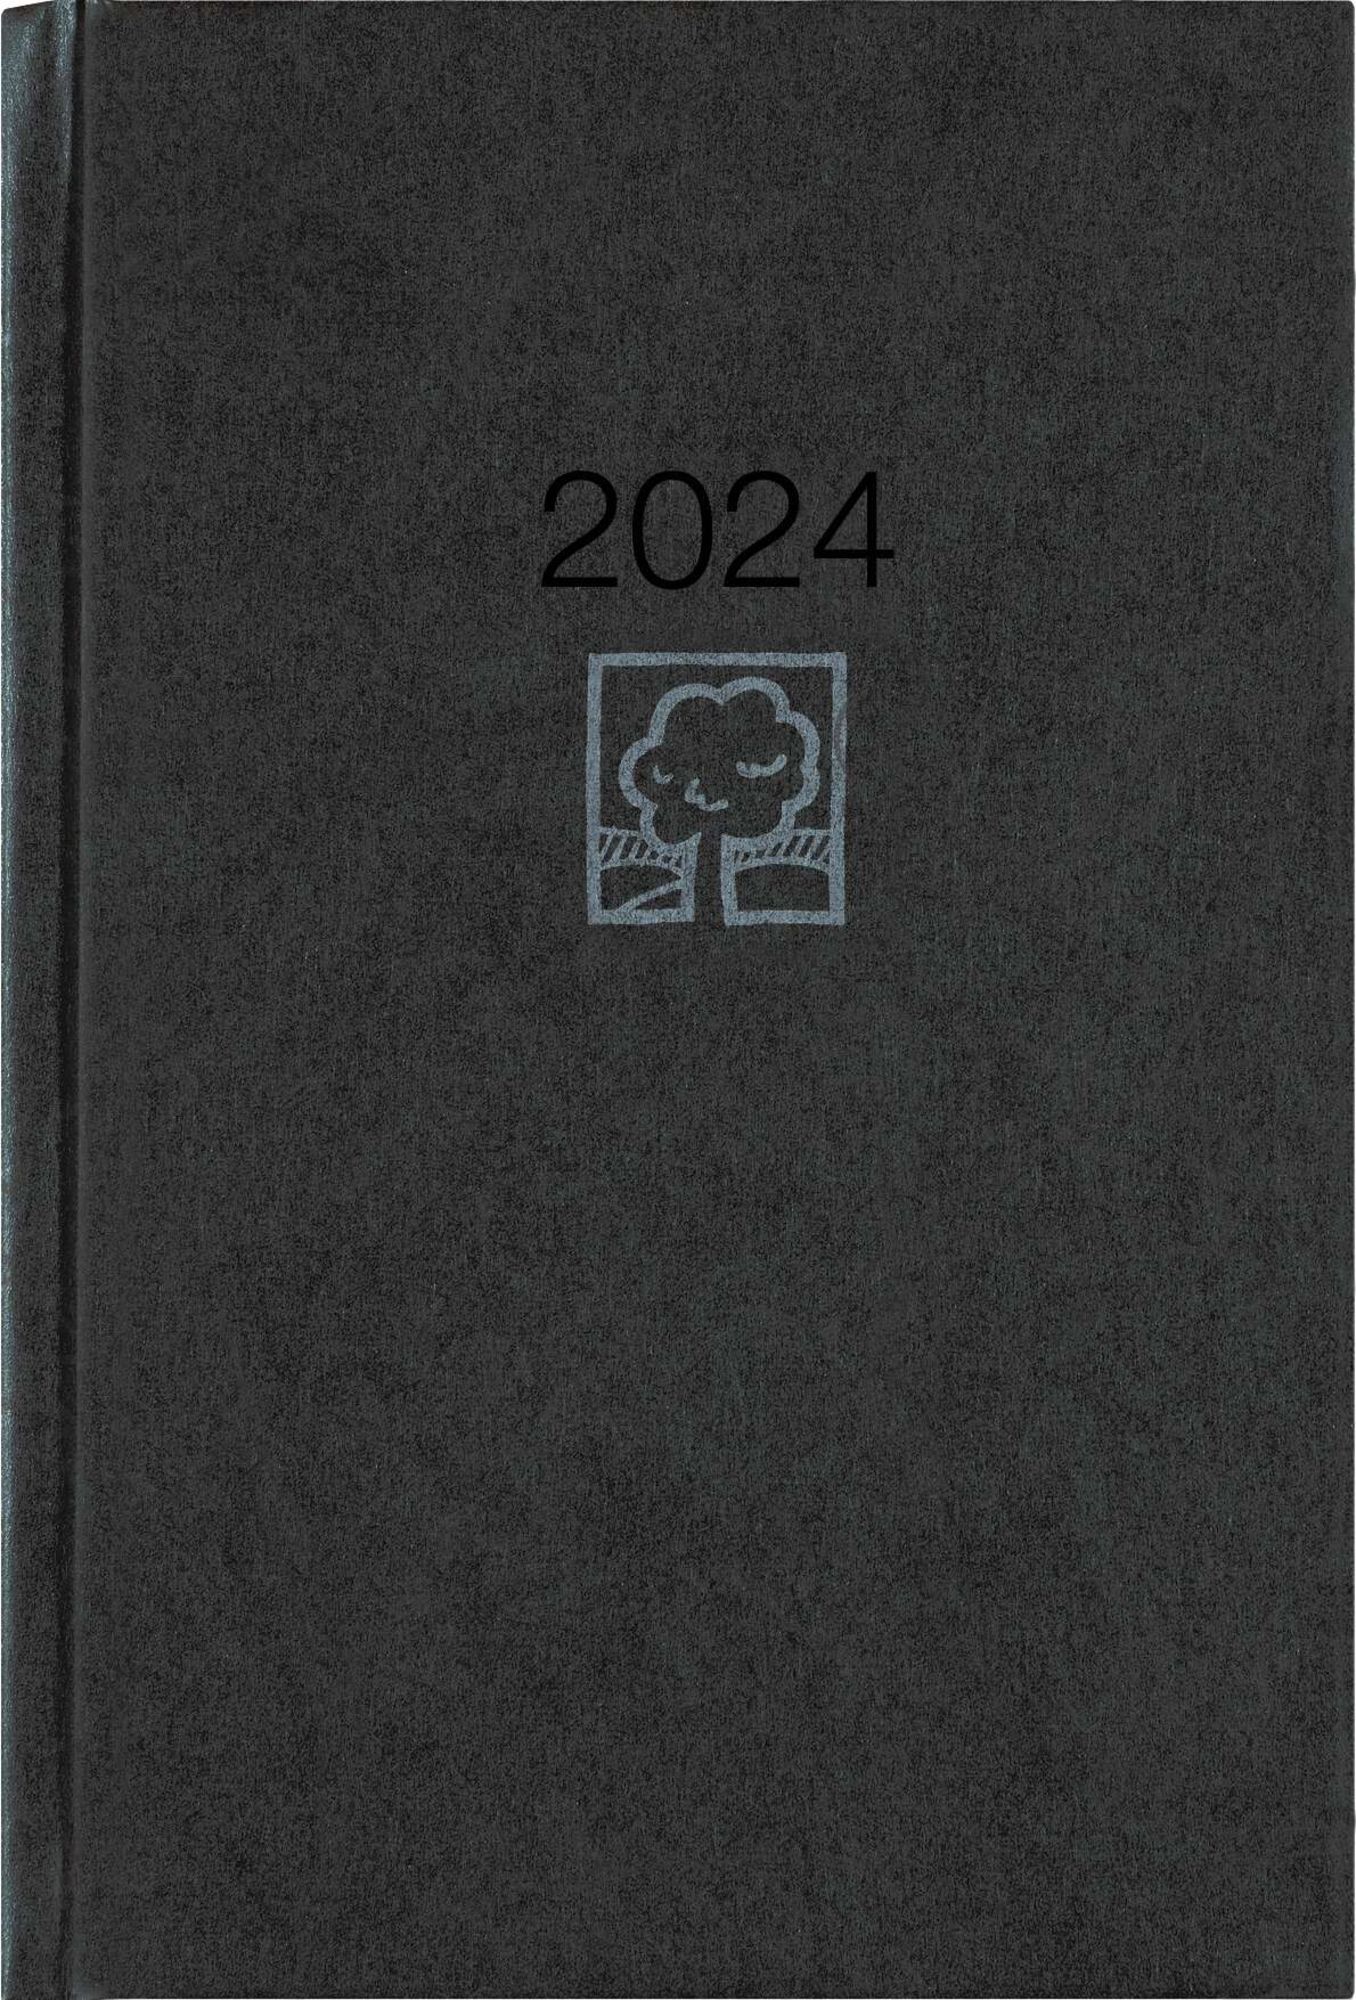 Terminbuch anthrazit 2024 - Bürokalender A4 21x29,7 cm - 1 Tag 1 Seite -  Einband wattiert - Viertelstundeneinteilung 7:30 - 20 Uhr - 886-0021 -  Kalender bestellen